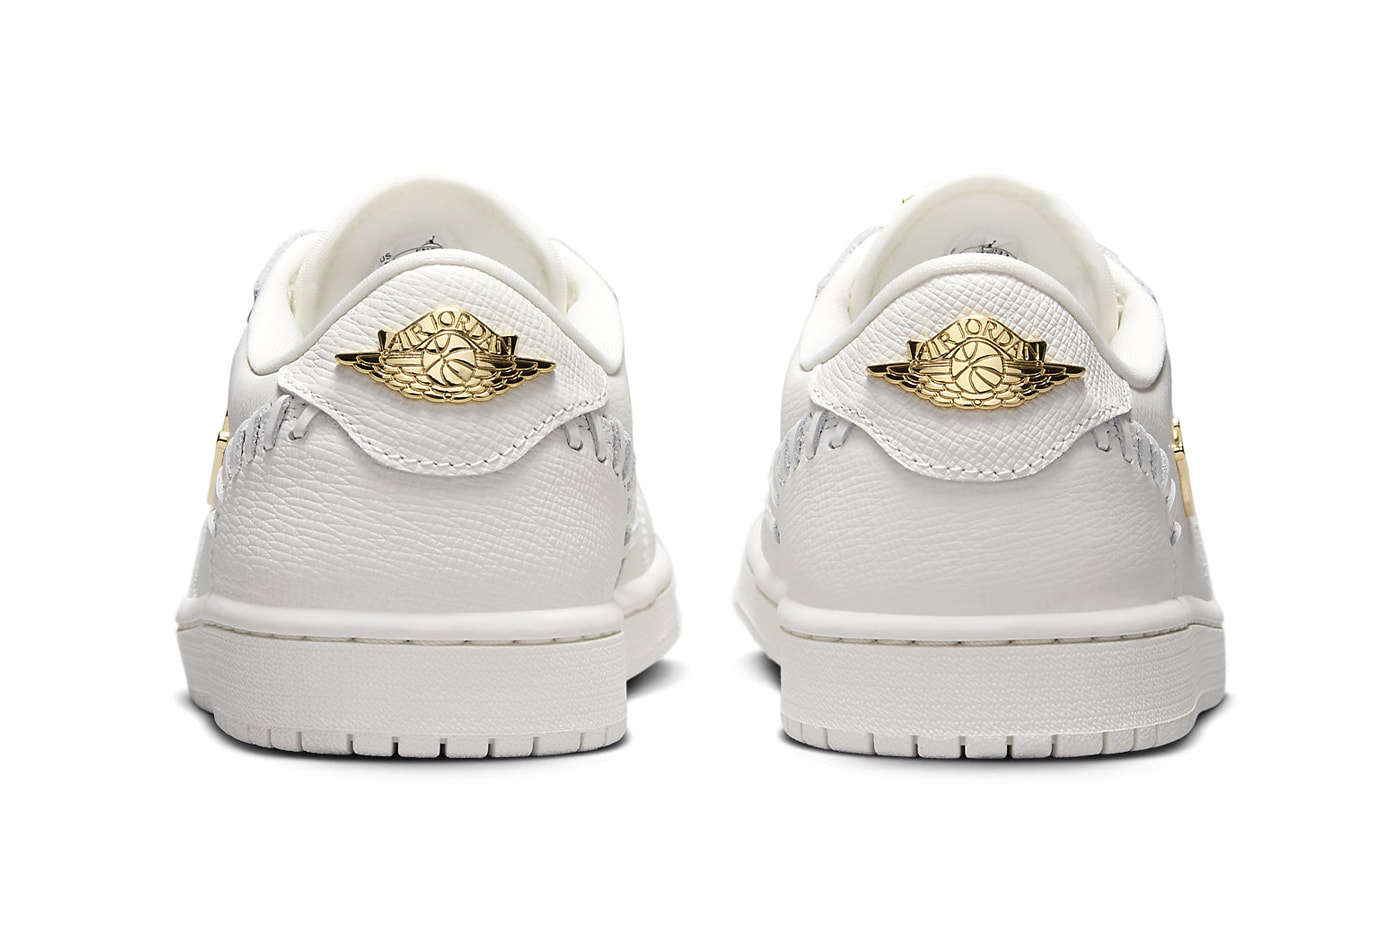 Nike Air Jordan 1 Low Method of Make "White/Metallic Gold" Release Info